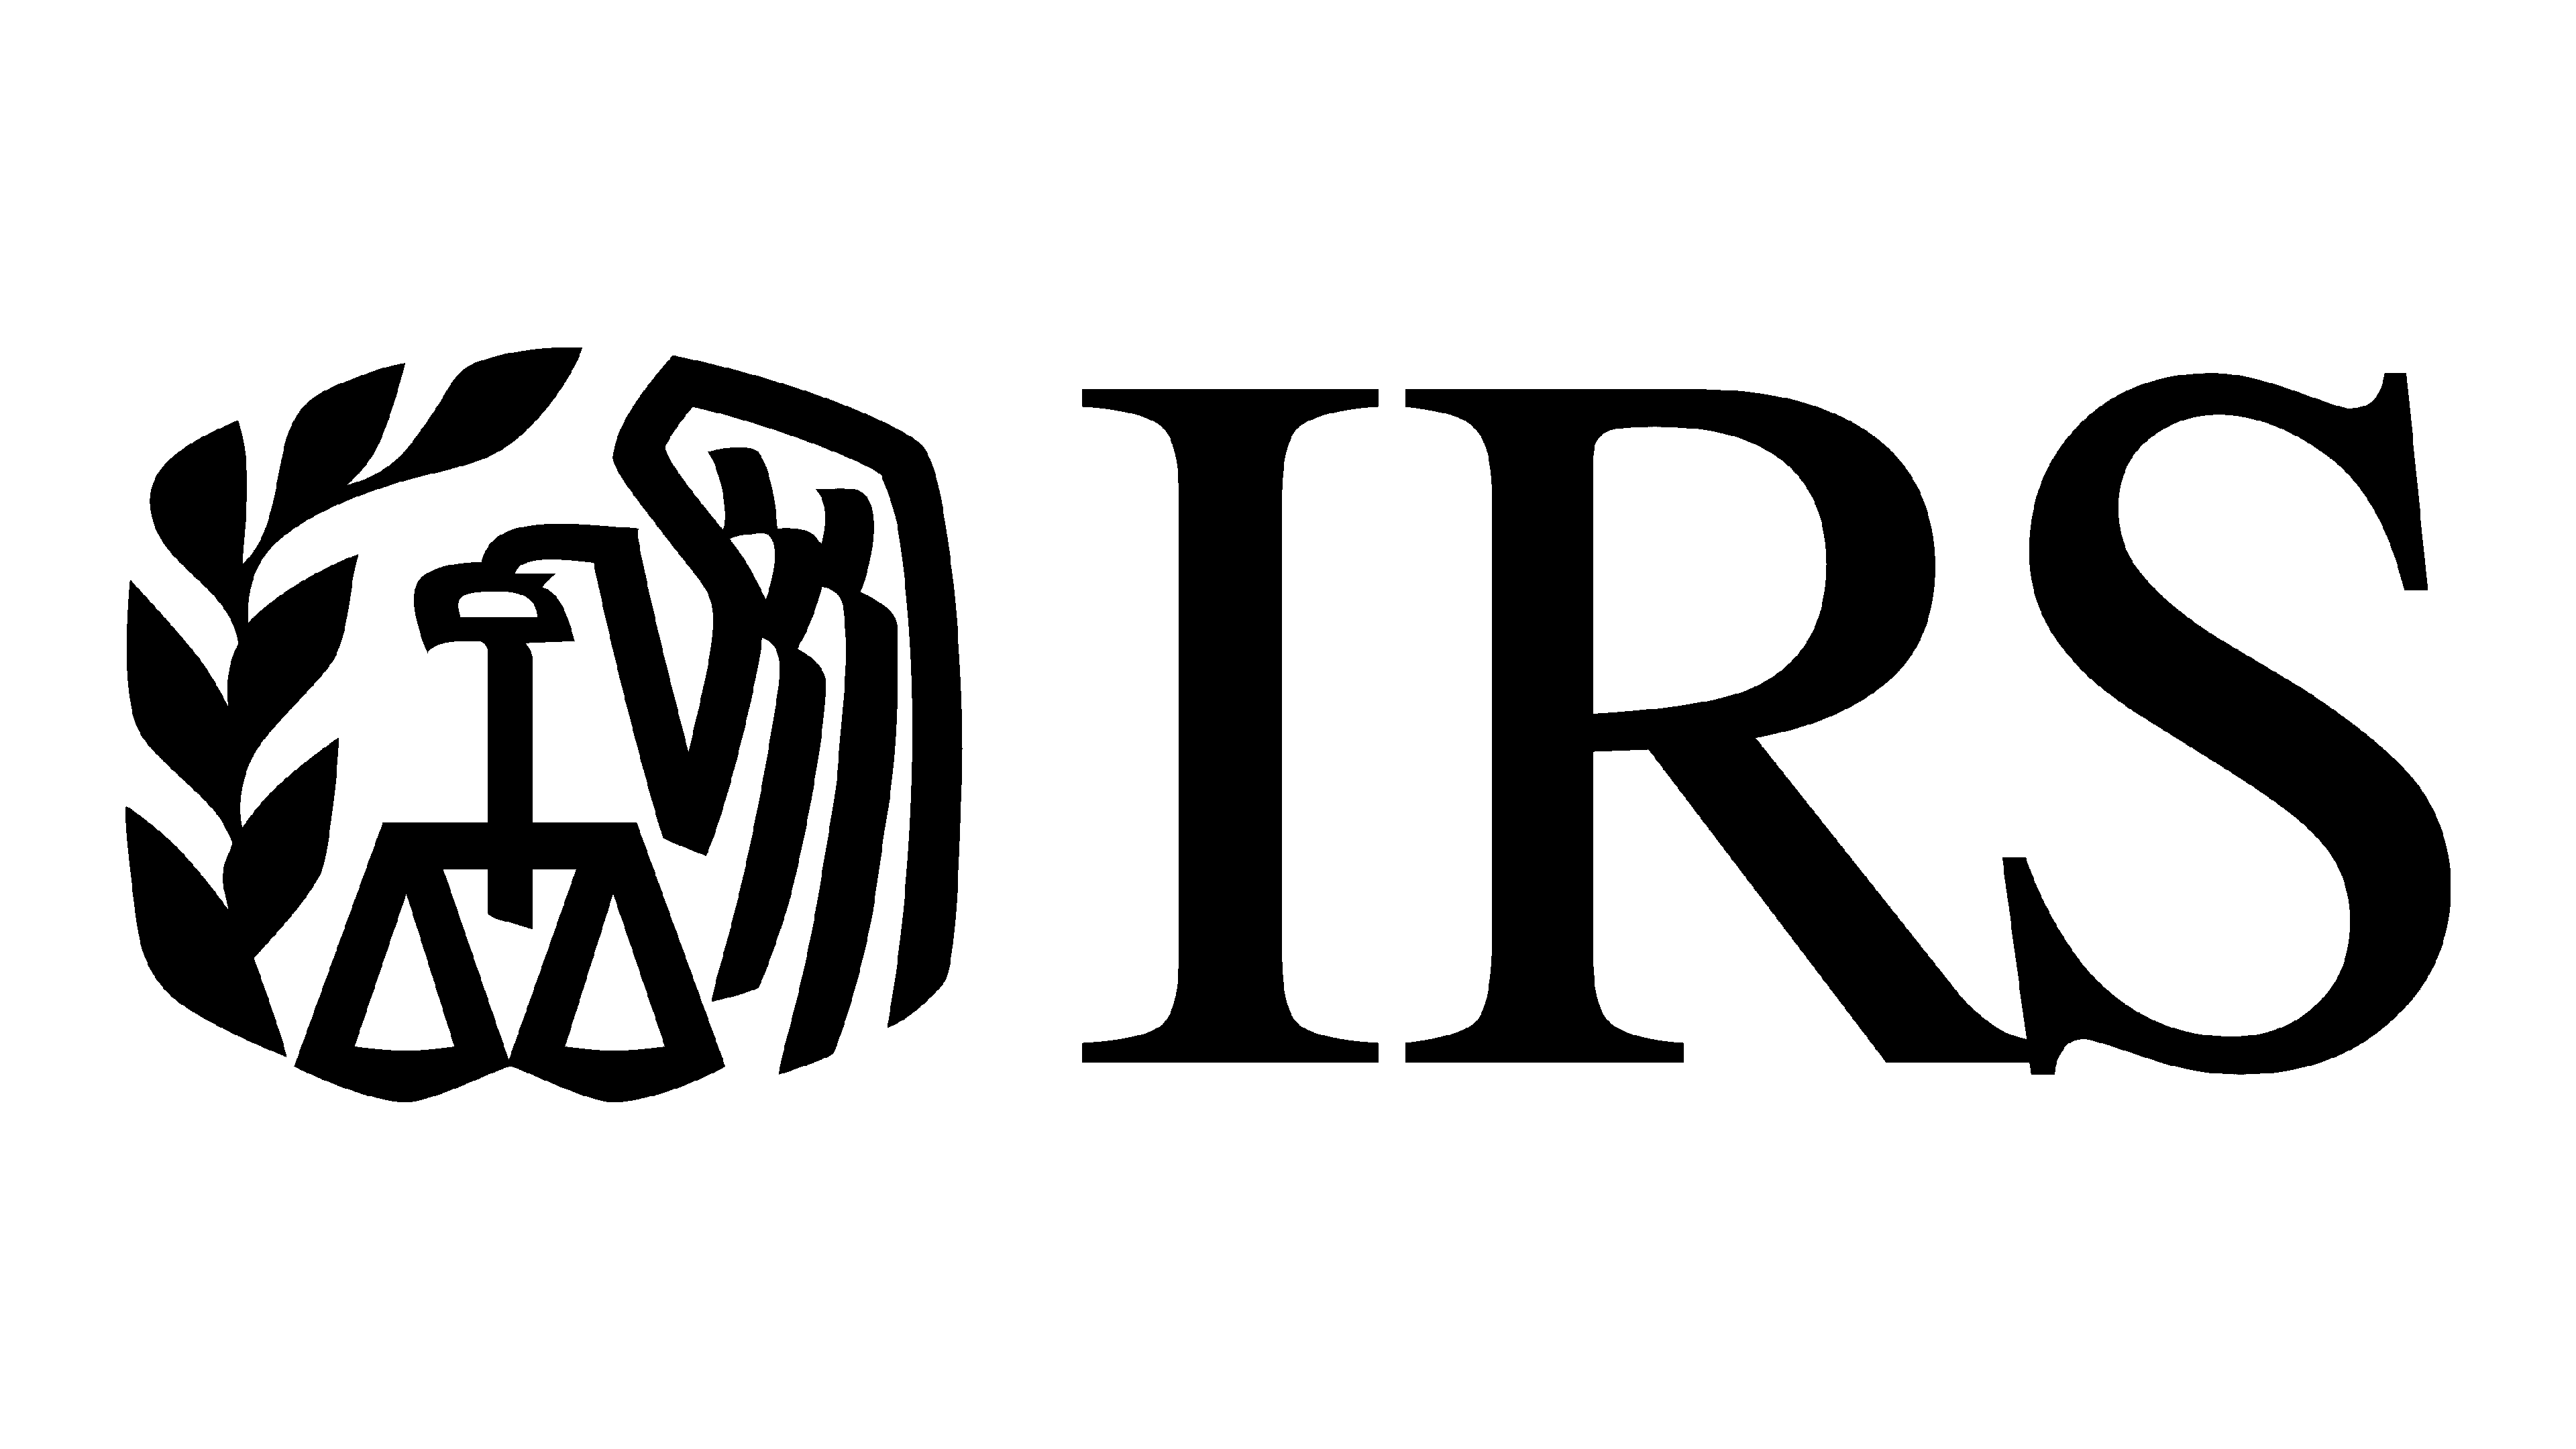 Pilot IRS logo